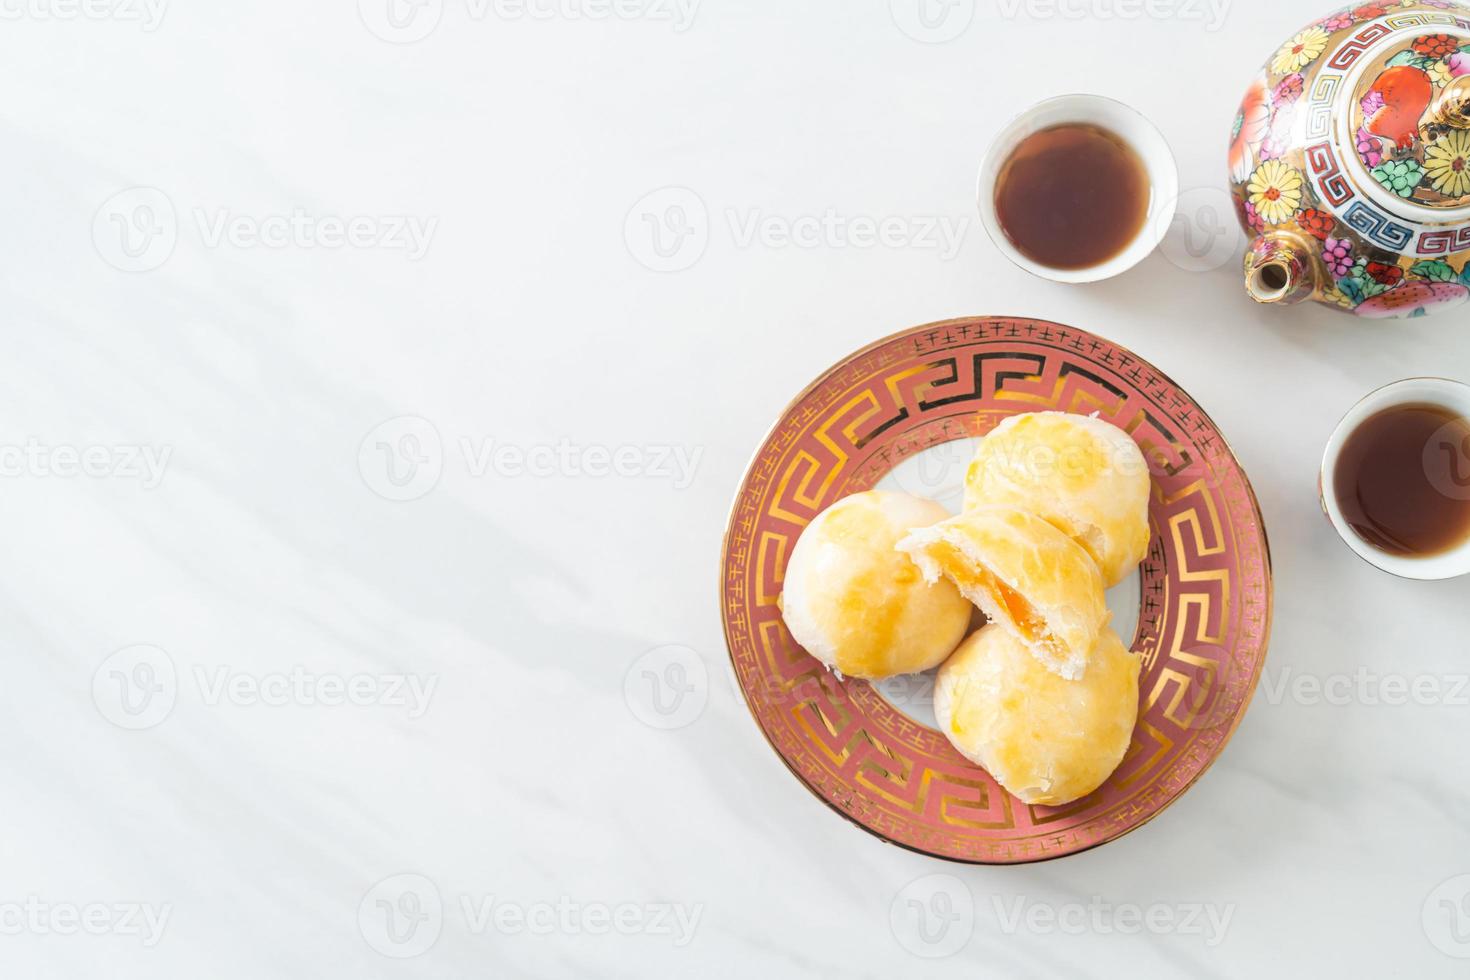 pastel de luna de pastelería china con maní huevo salado foto